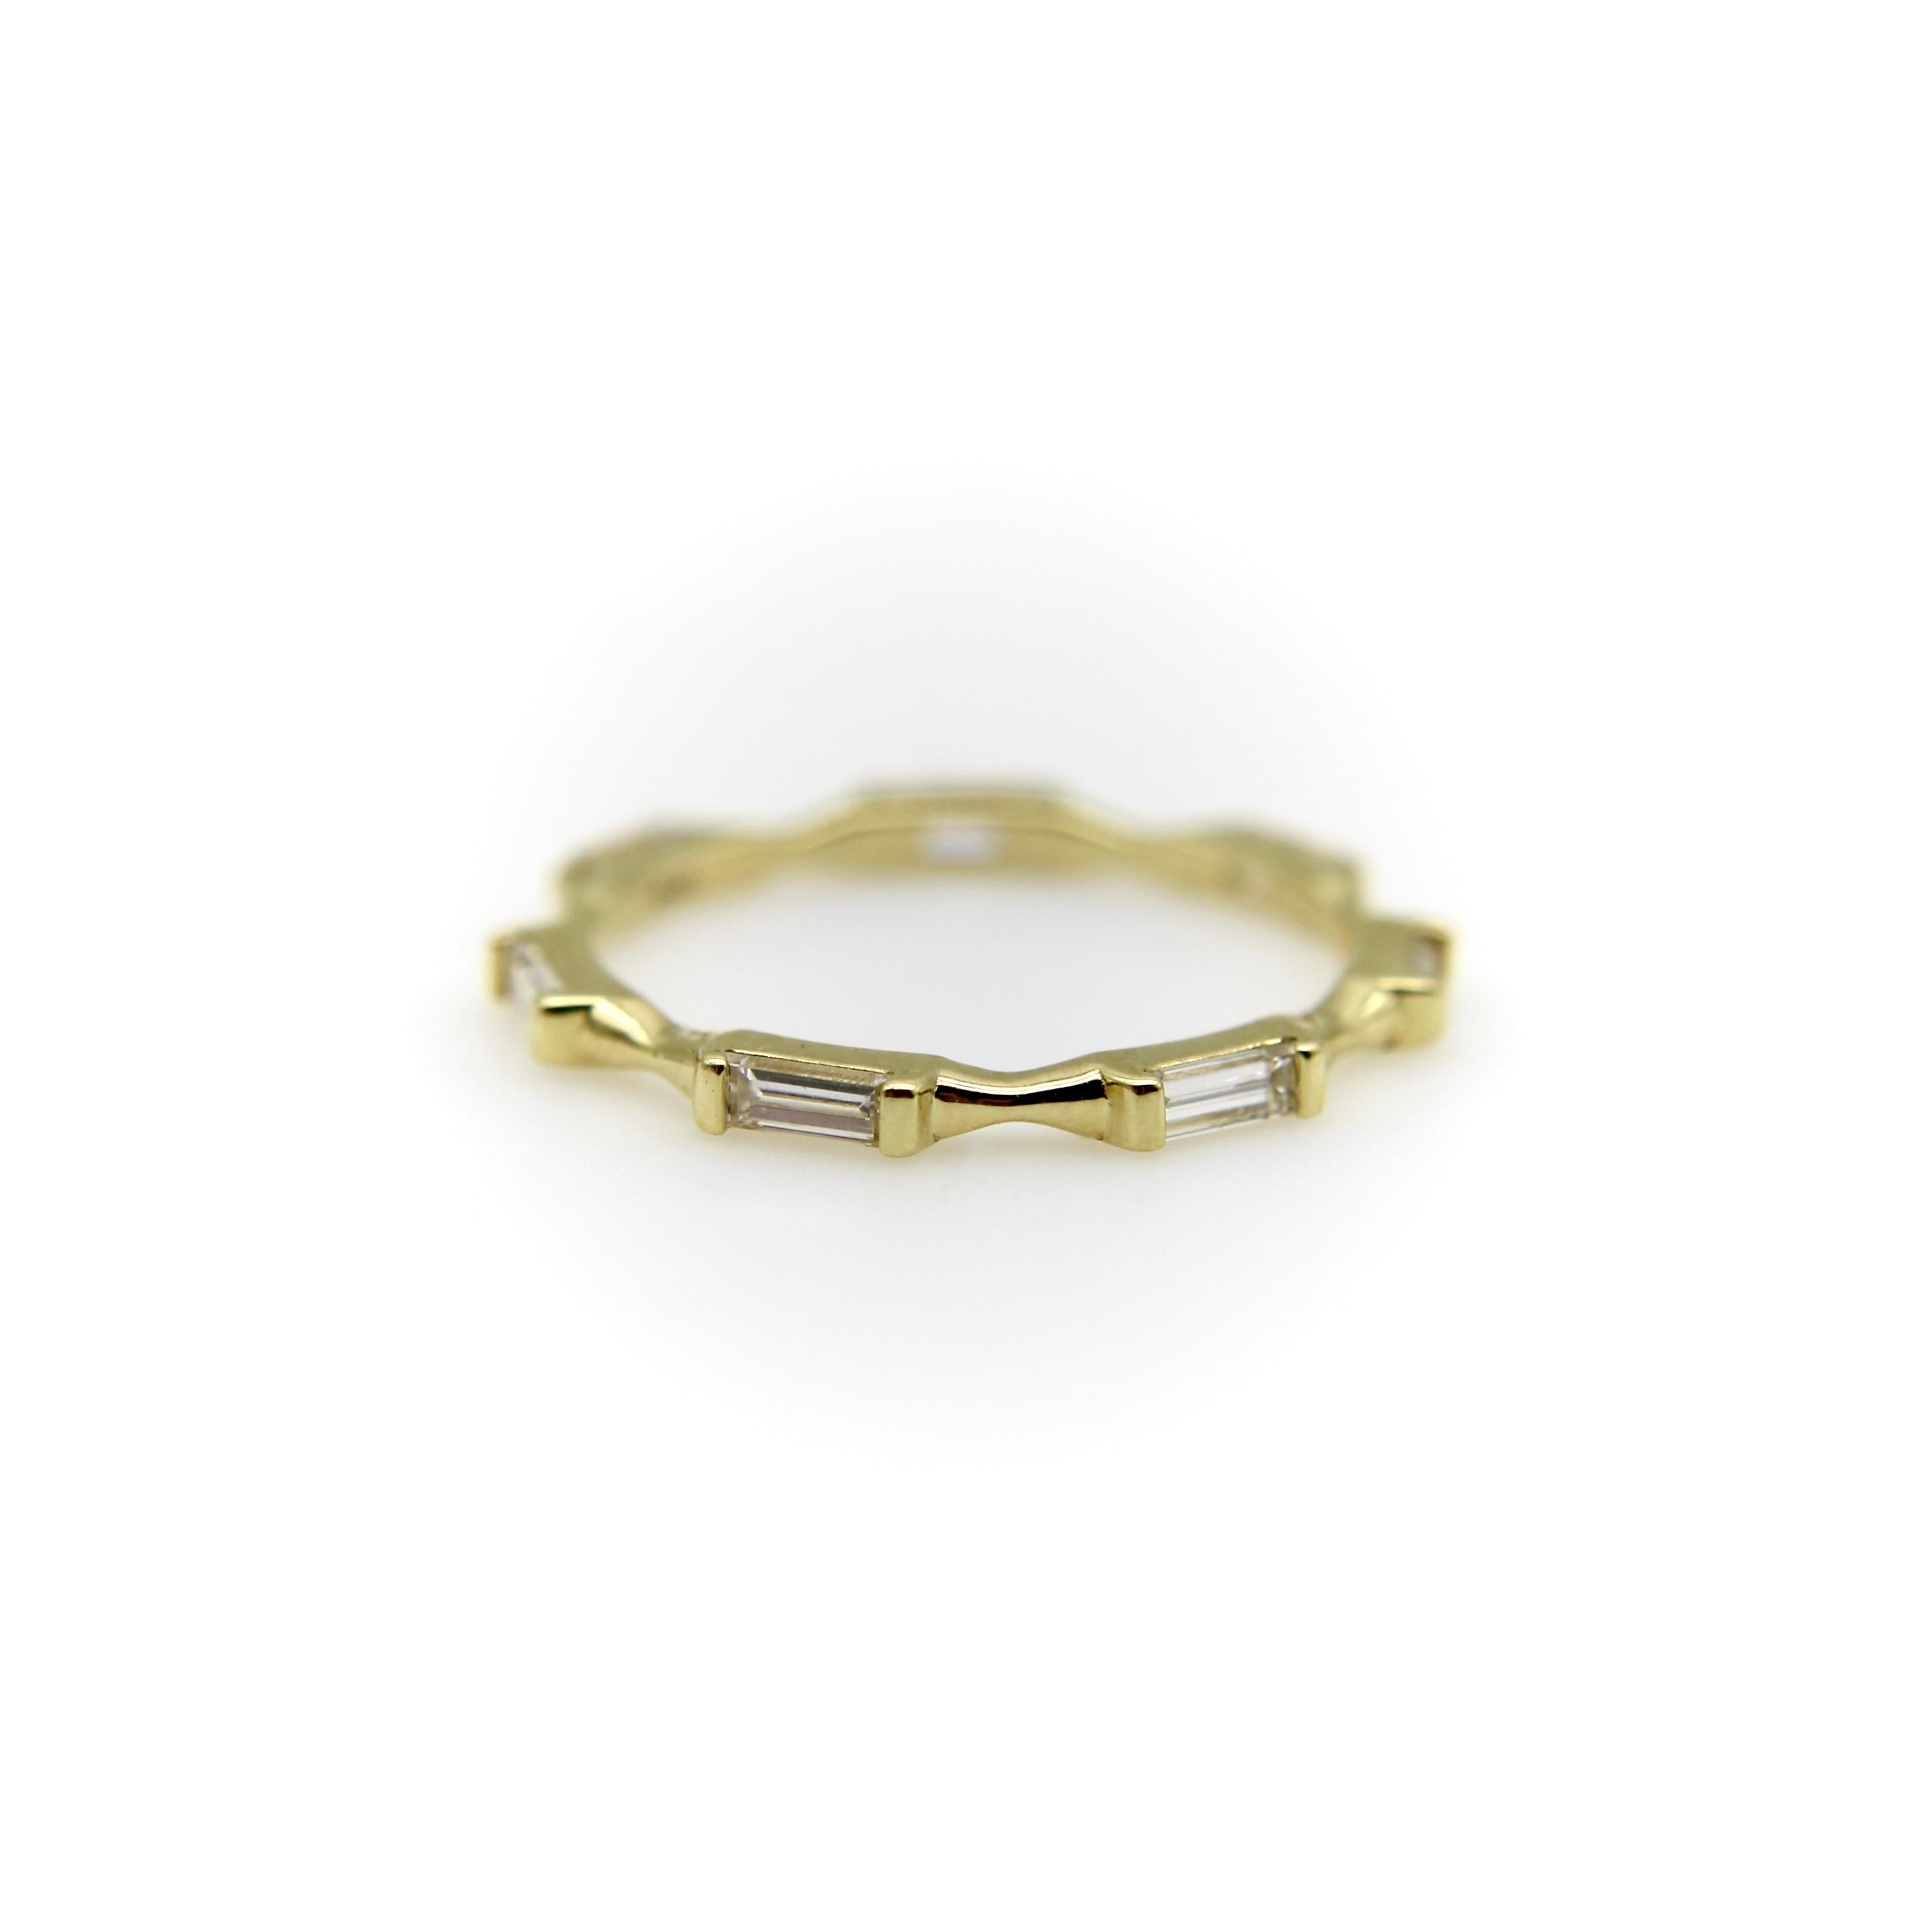 Diese moderne Variante des klassischen Ewigkeitsrings ist Teil der charakteristischen Kollektion von Kirsten's Corner. Der Ring besteht aus sieben horizontal gefassten Baguette-Diamanten in 18 Karat Gold. Das Band zwischen den einzelnen Diamanten